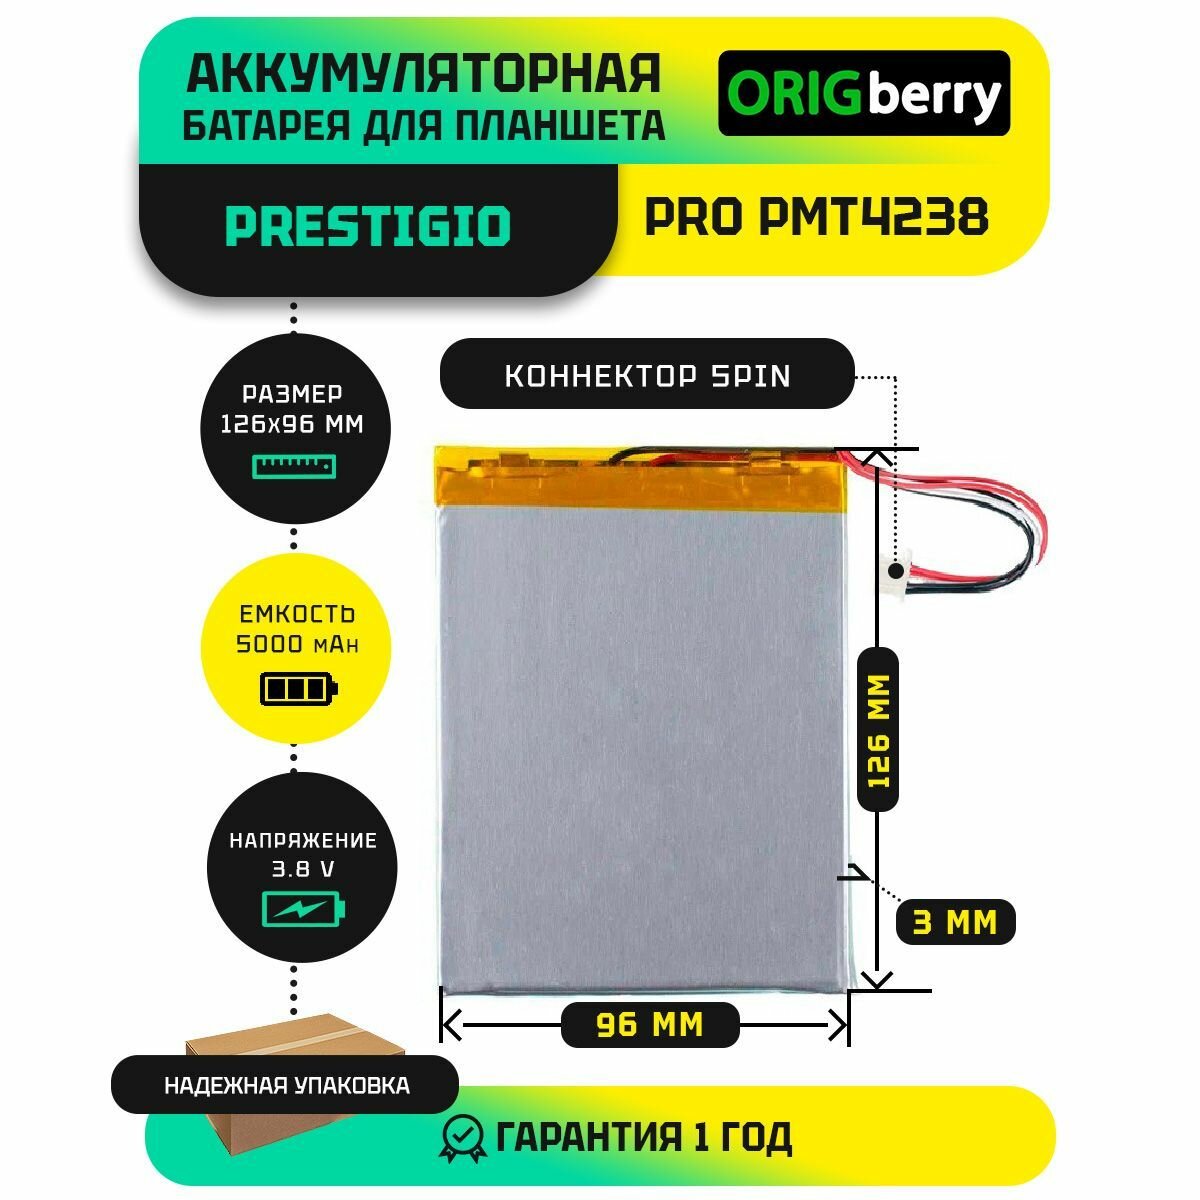 Аккумулятор для планшета Prestigio PRO PMT4238 4G 38 V / 5000 mAh / 126мм x 96мм x 3мм / коннектор 5 PIN